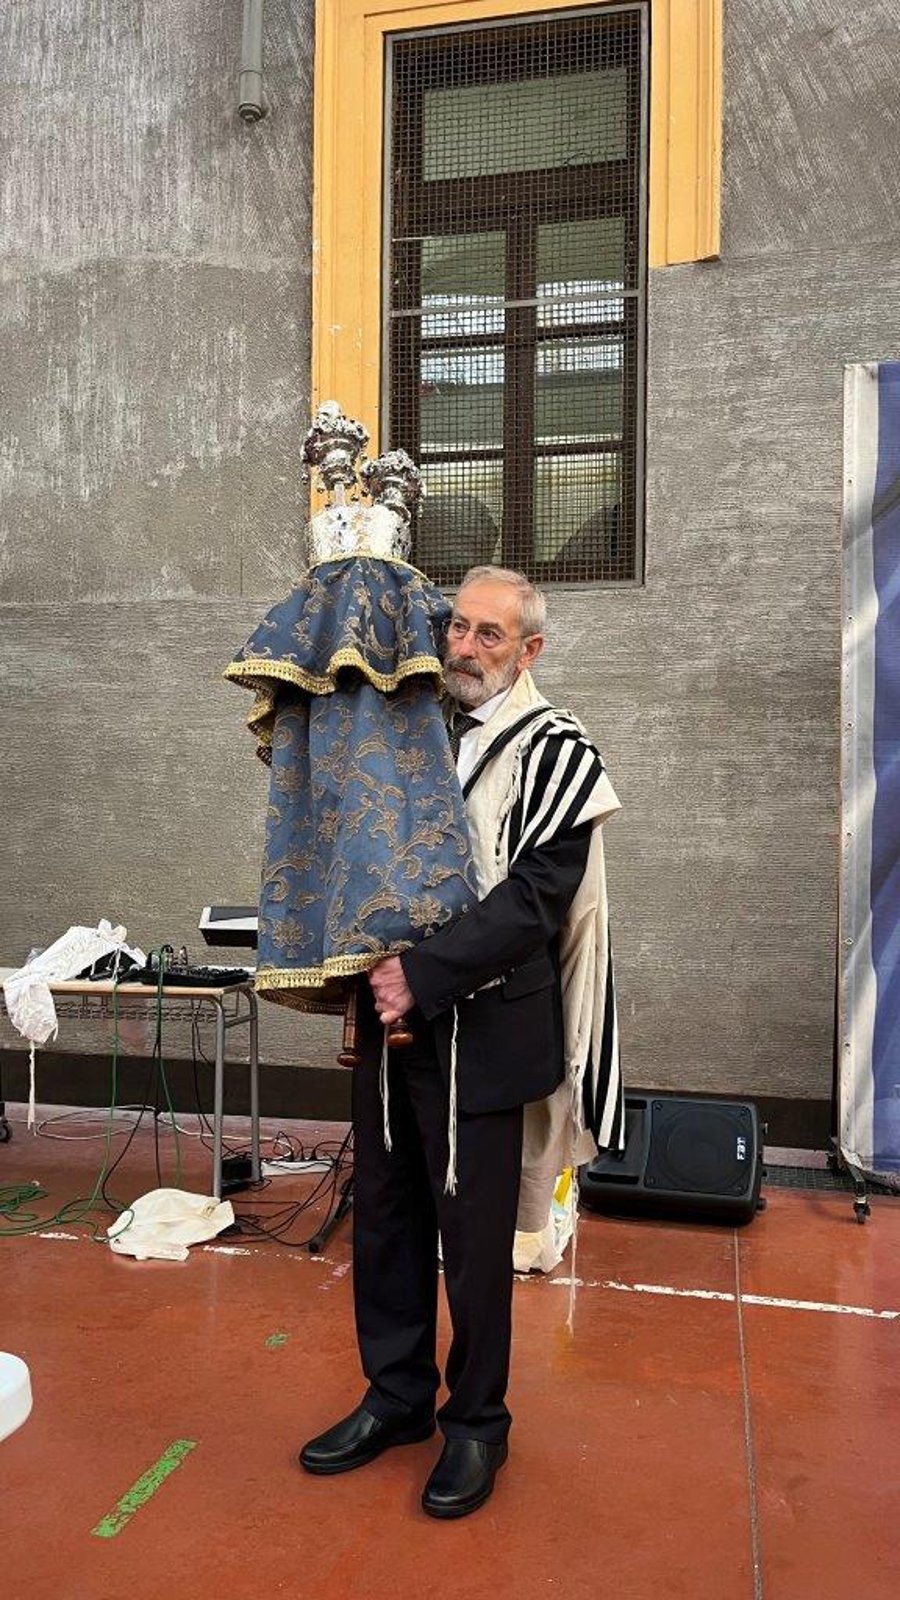 40 שנה אחרי הפיגוע הקשה: ספר תורה הוכנס לבית הכנסת